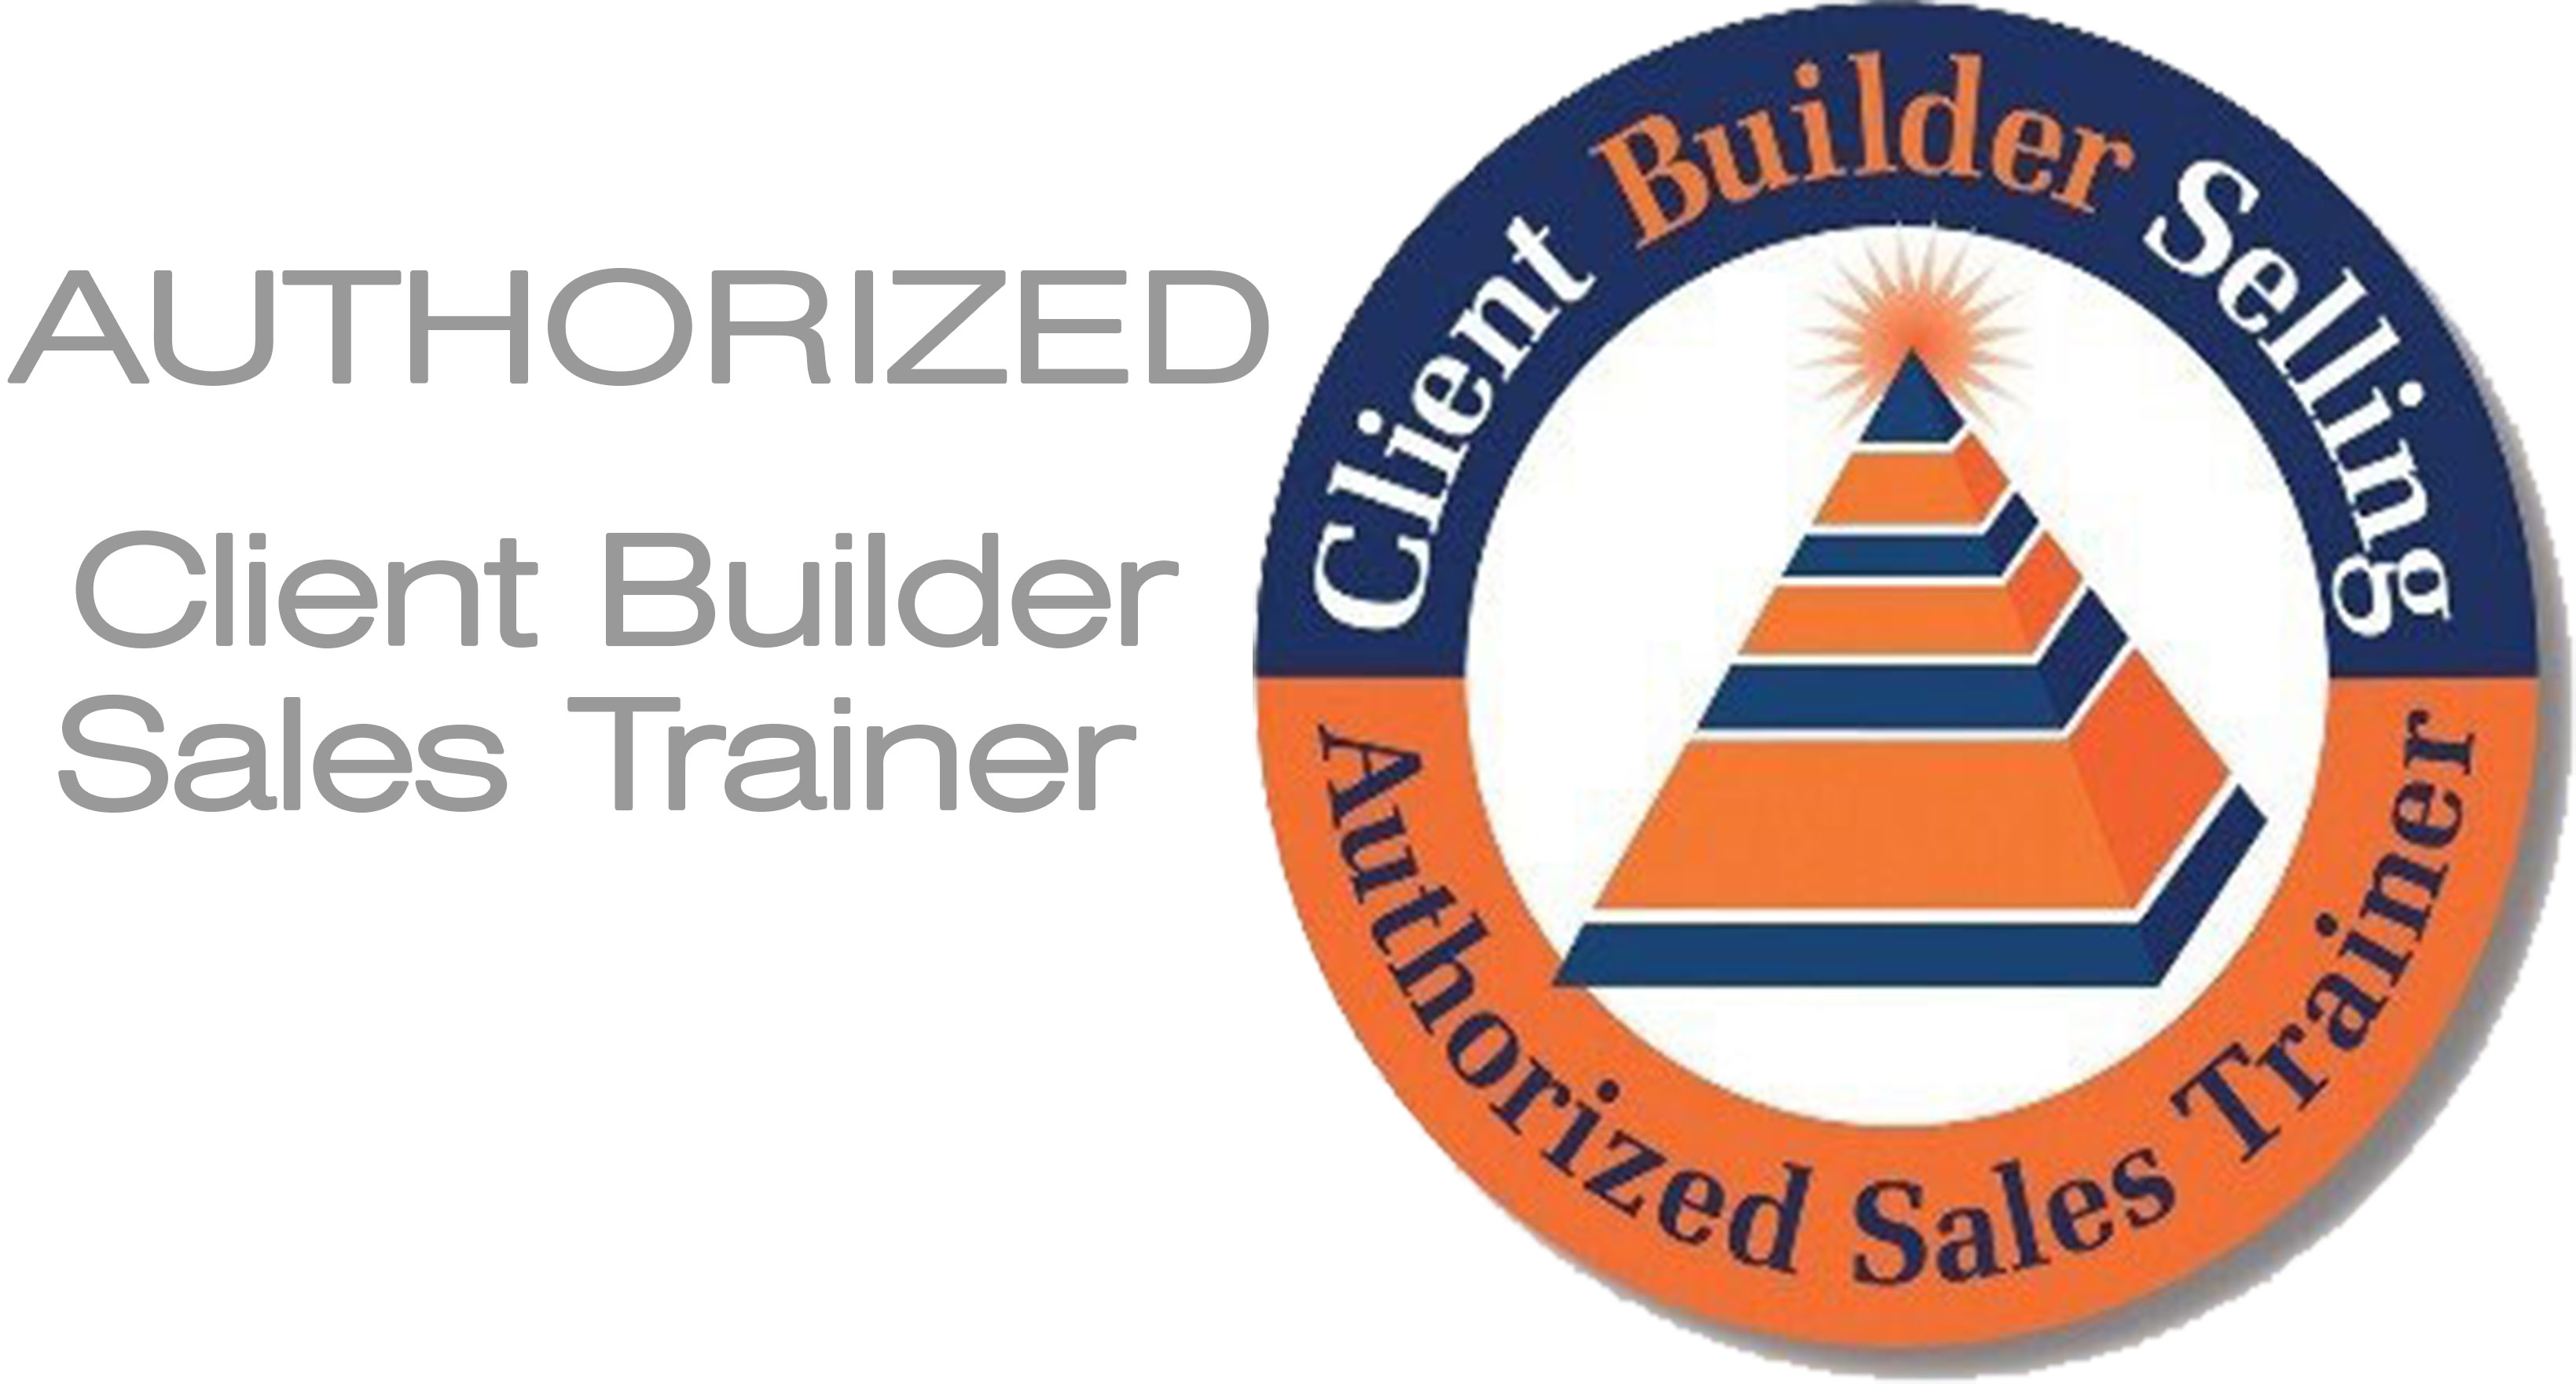 Authorized Client Builder Sales Trainer